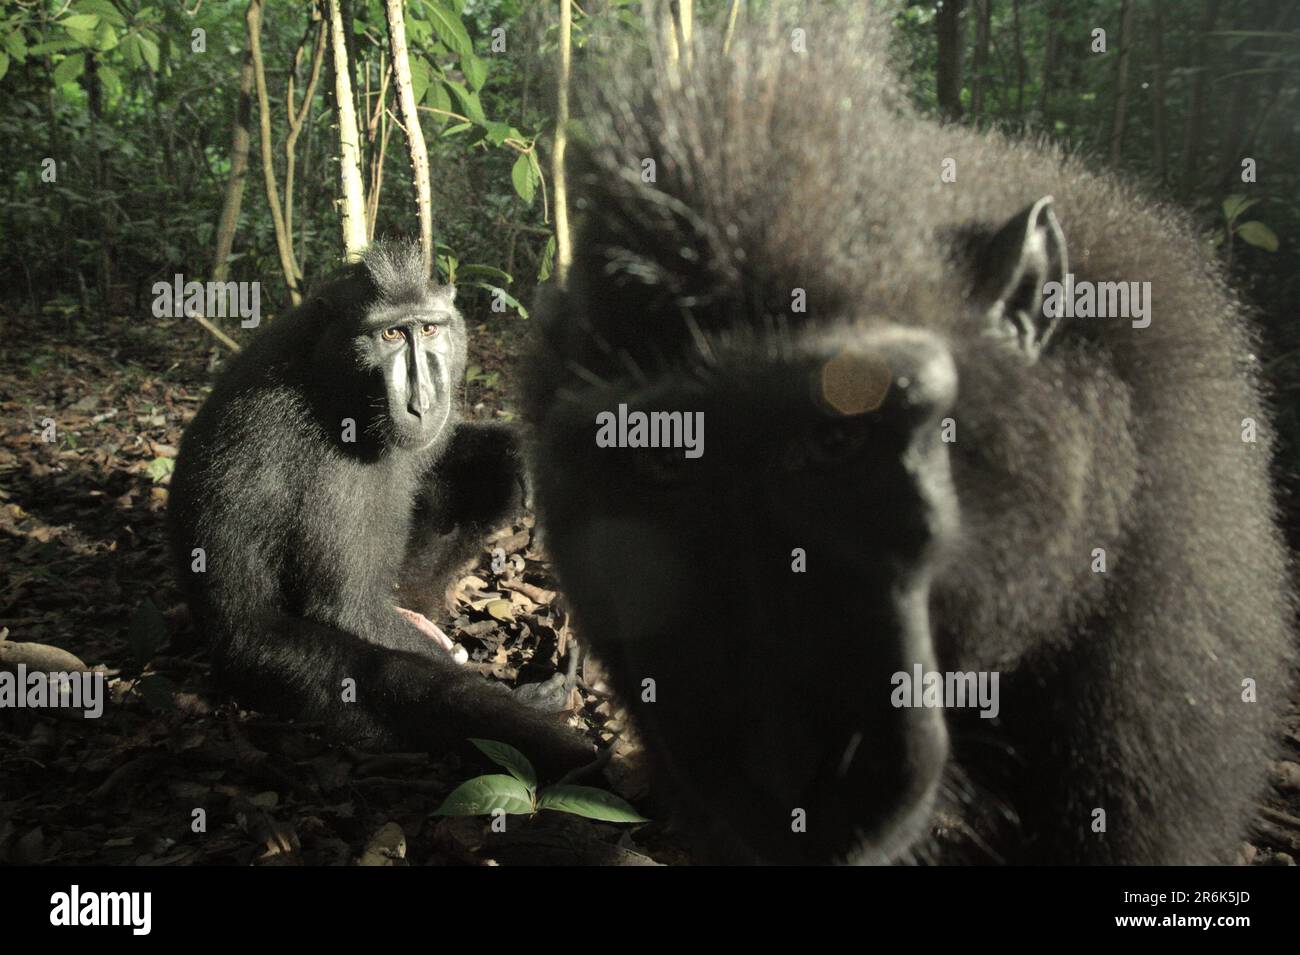 Zwei Personen von Sulawesi-Schwarzkammmakaken (Macaca nigra) werden im Naturschutzgebiet Tangkoko, North Sulawesi, Indonesien, fotografiert. In einer wärmeren Zukunft müssten sich die Primaten anpassen, mit weniger Futtersuche oder ohne Paarung, was die gesamte Nahrungsaufnahme einschränken und den Fortpflanzungszyklus verändern könnte. Auch ohne den Faktor des Klimawandels ist Macaca nigra einer der 25 am stärksten gefährdeten Primaten der Erde und wird laut Wissenschaftlern bis 2050 aussterben. Stockfoto